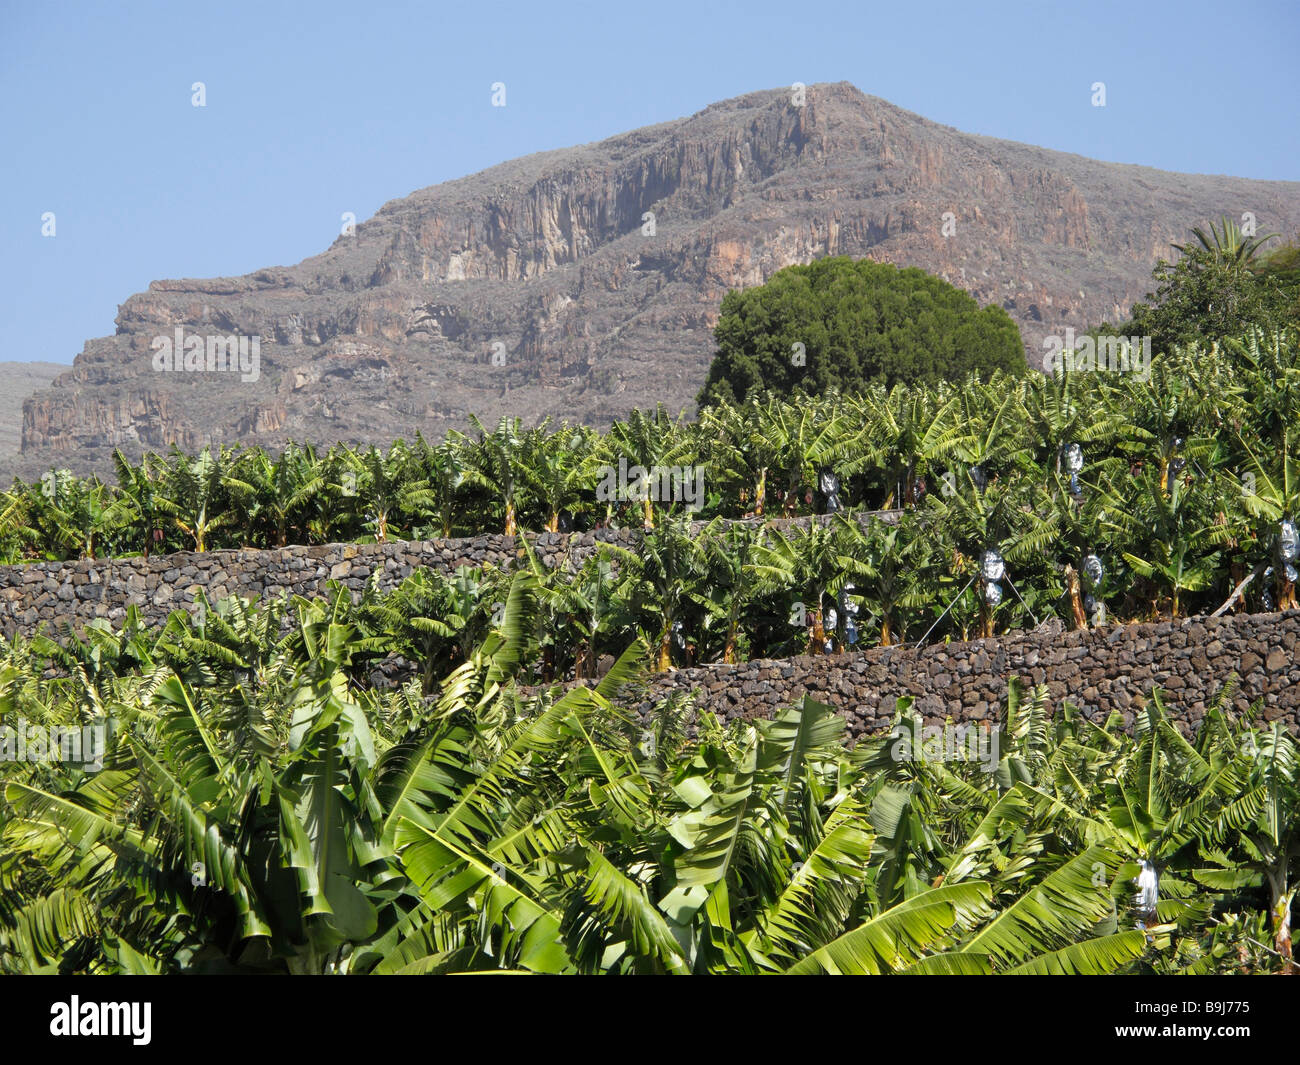 Banana plantation near La Dama, La Gomera, Canary Islands, Spain, Europe Stock Photo